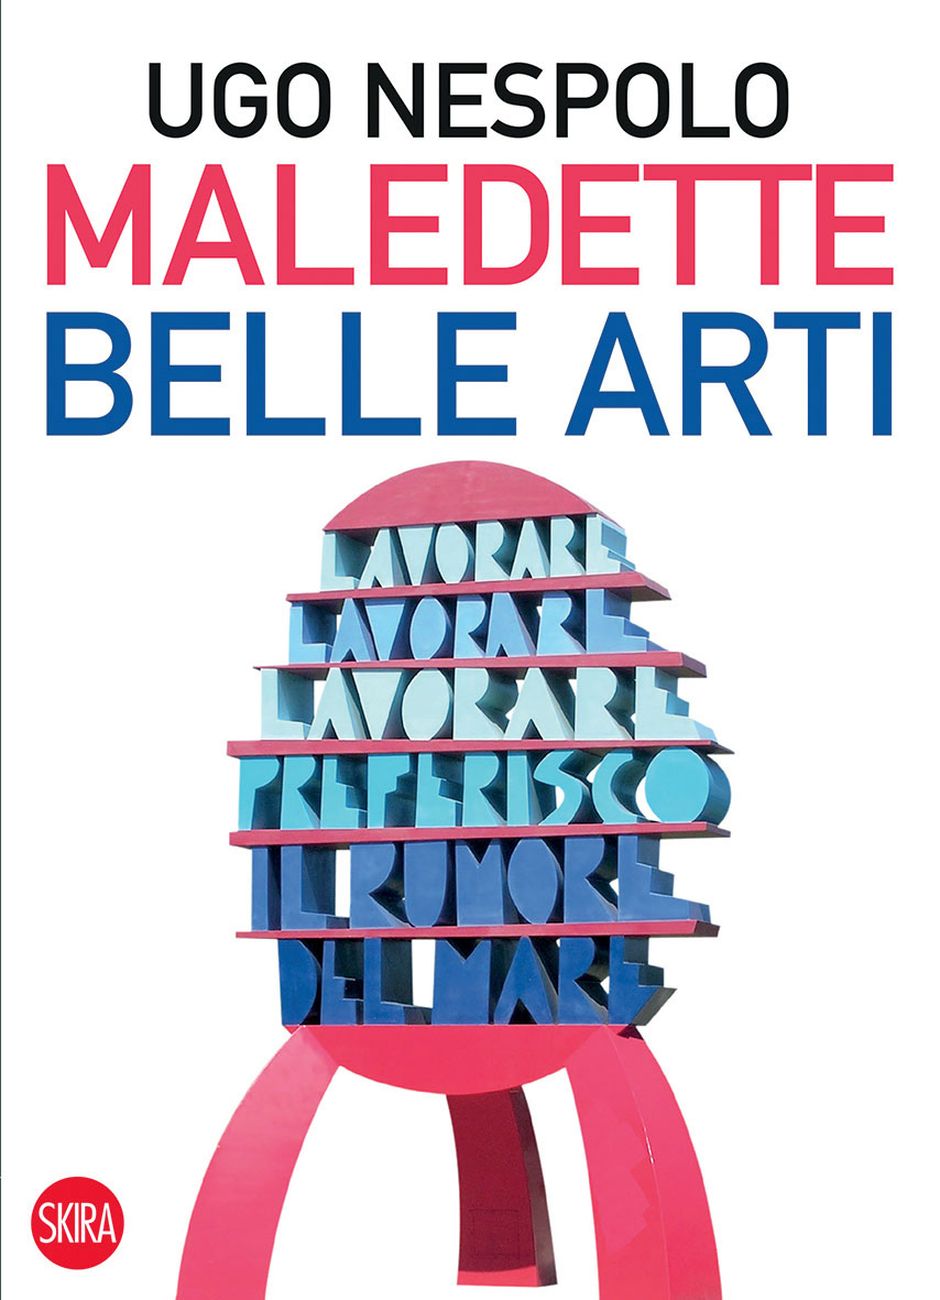 Ugo Nespolo – Maledette Belle Arti (Skira, Milano 2019)